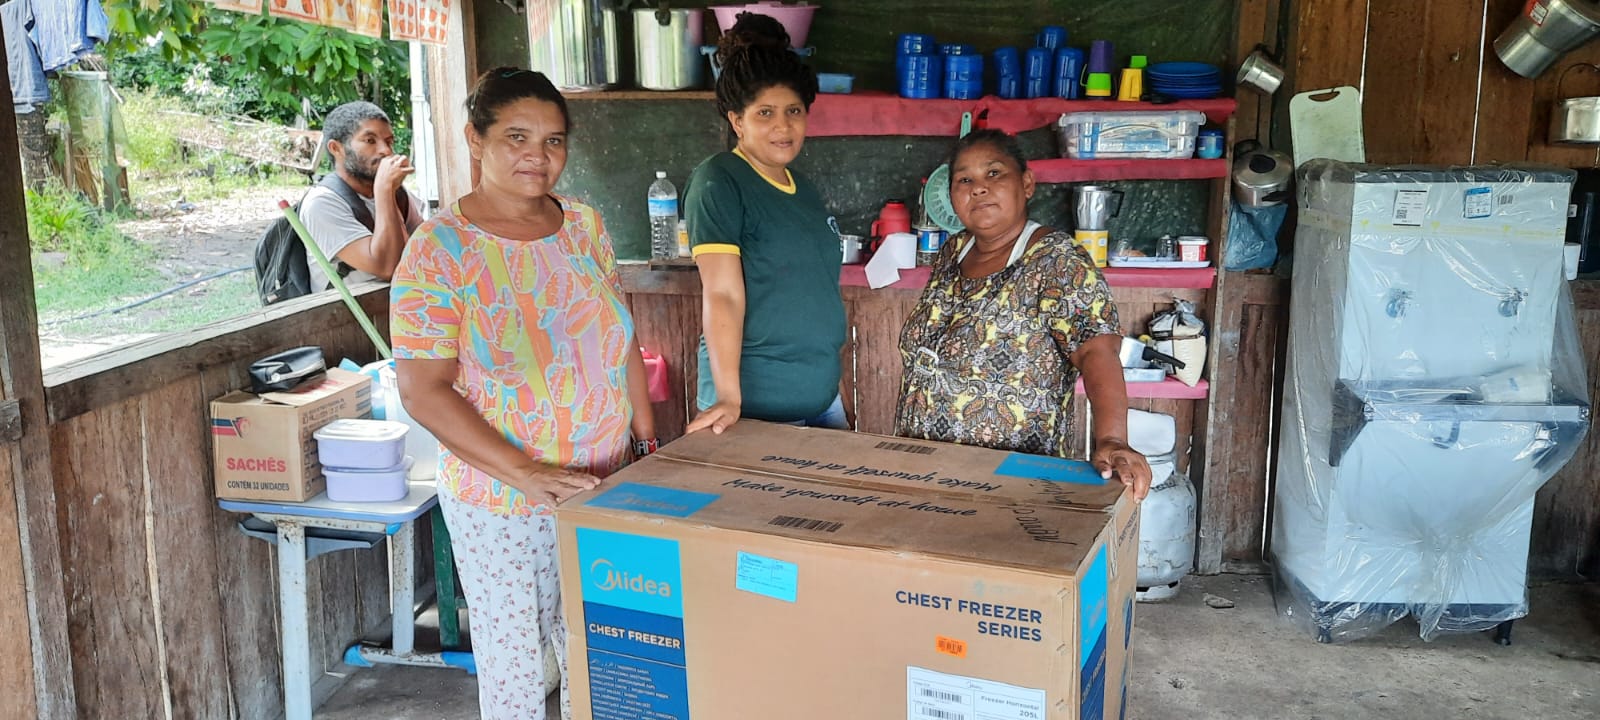 Givanilda acompanha entrega de freezer na cantina da escola em que trabalha|Acervo Pessoal